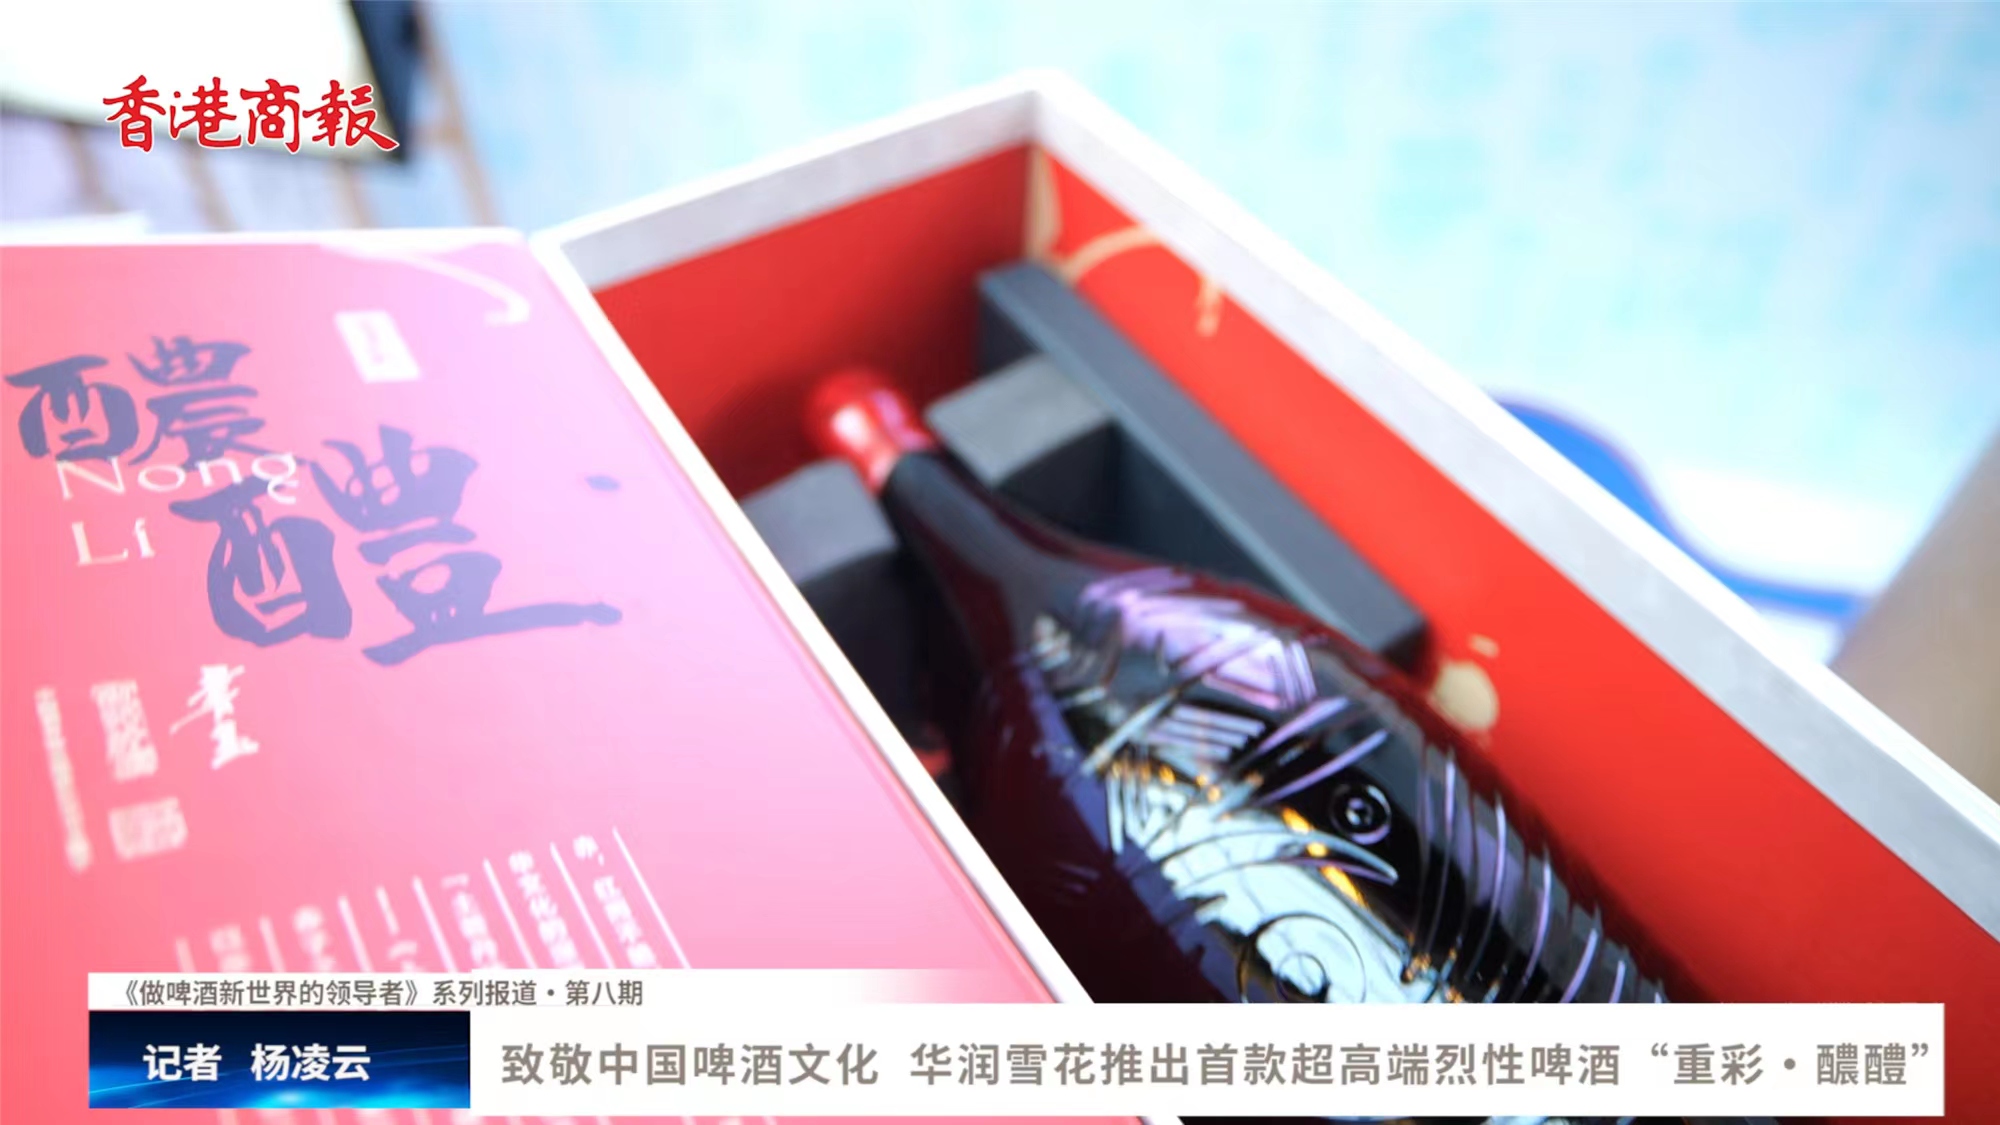 有片 | 致敬中國啤酒文化 華潤雪花推出首款超高端烈性啤酒「重彩•醲醴」